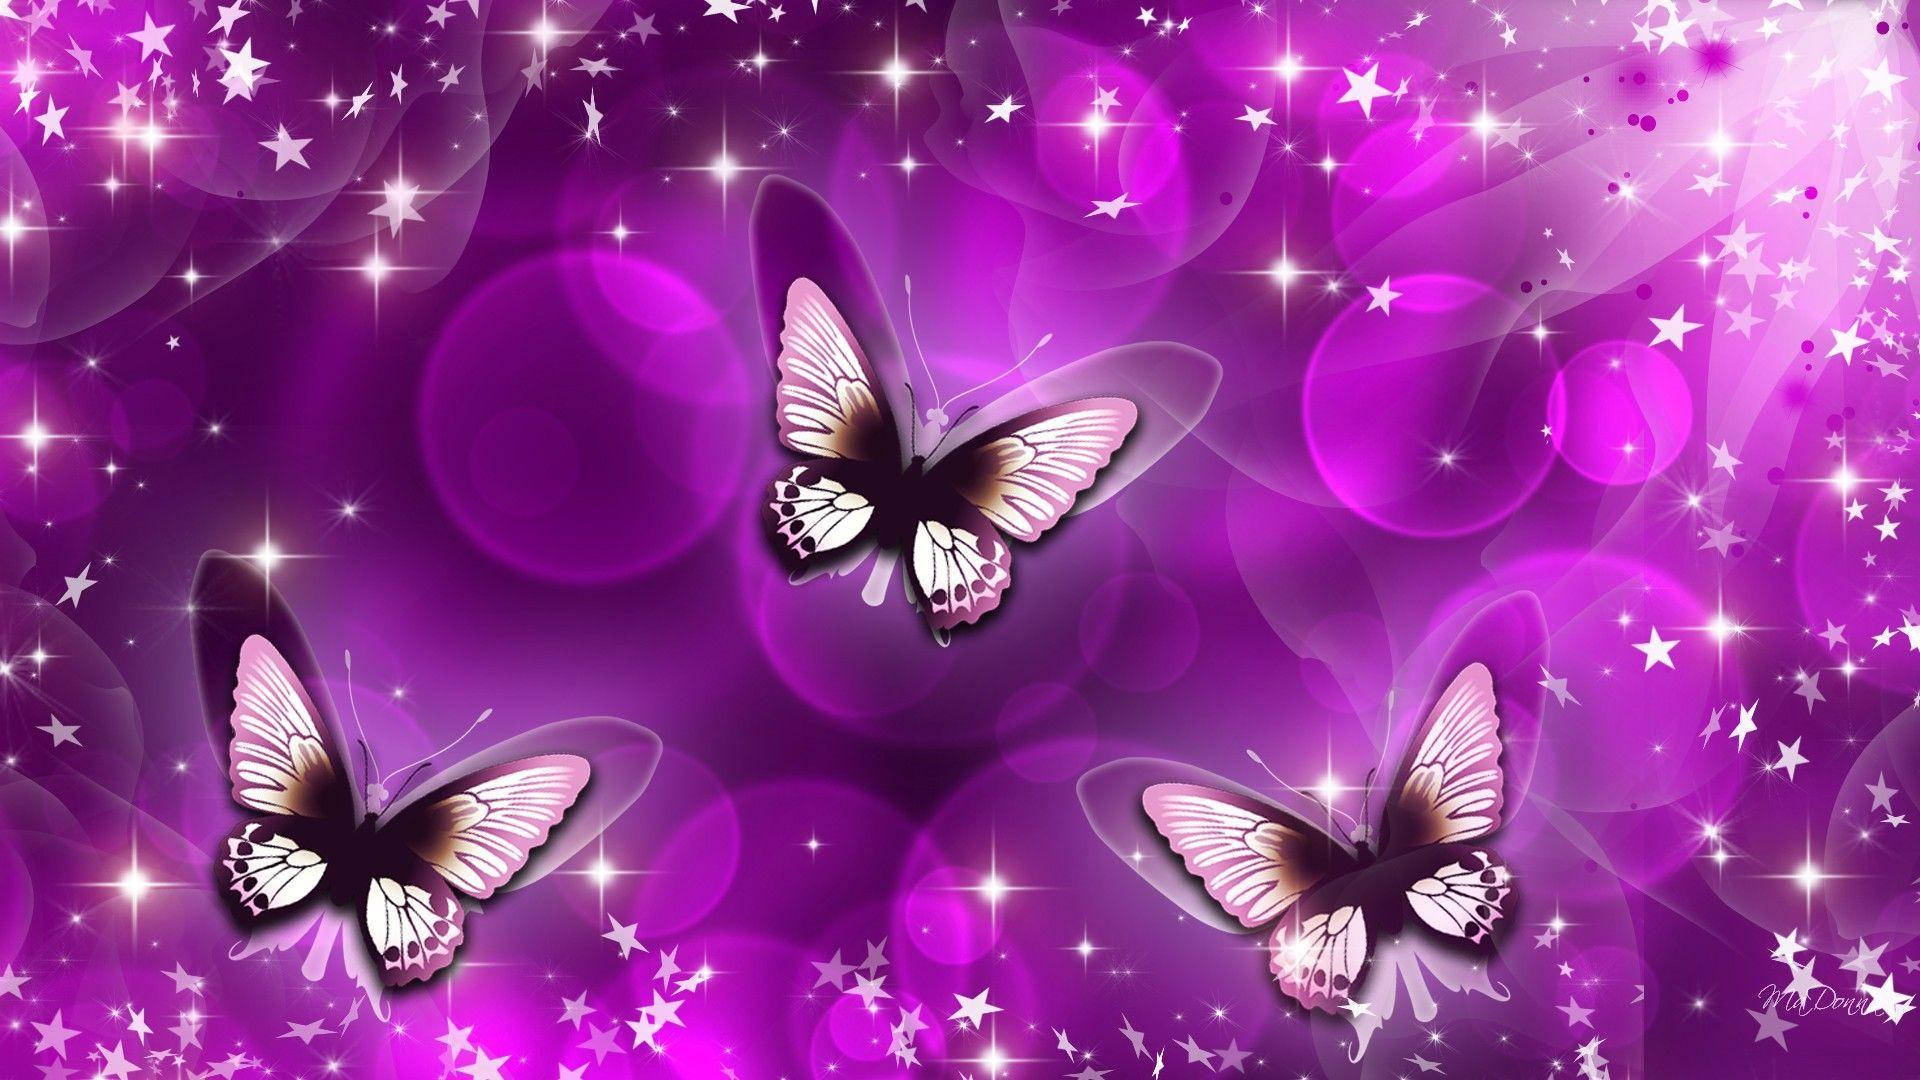 Free Purple Butterfly Wallpaper Downloads, Purple Butterfly Wallpaper for FREE